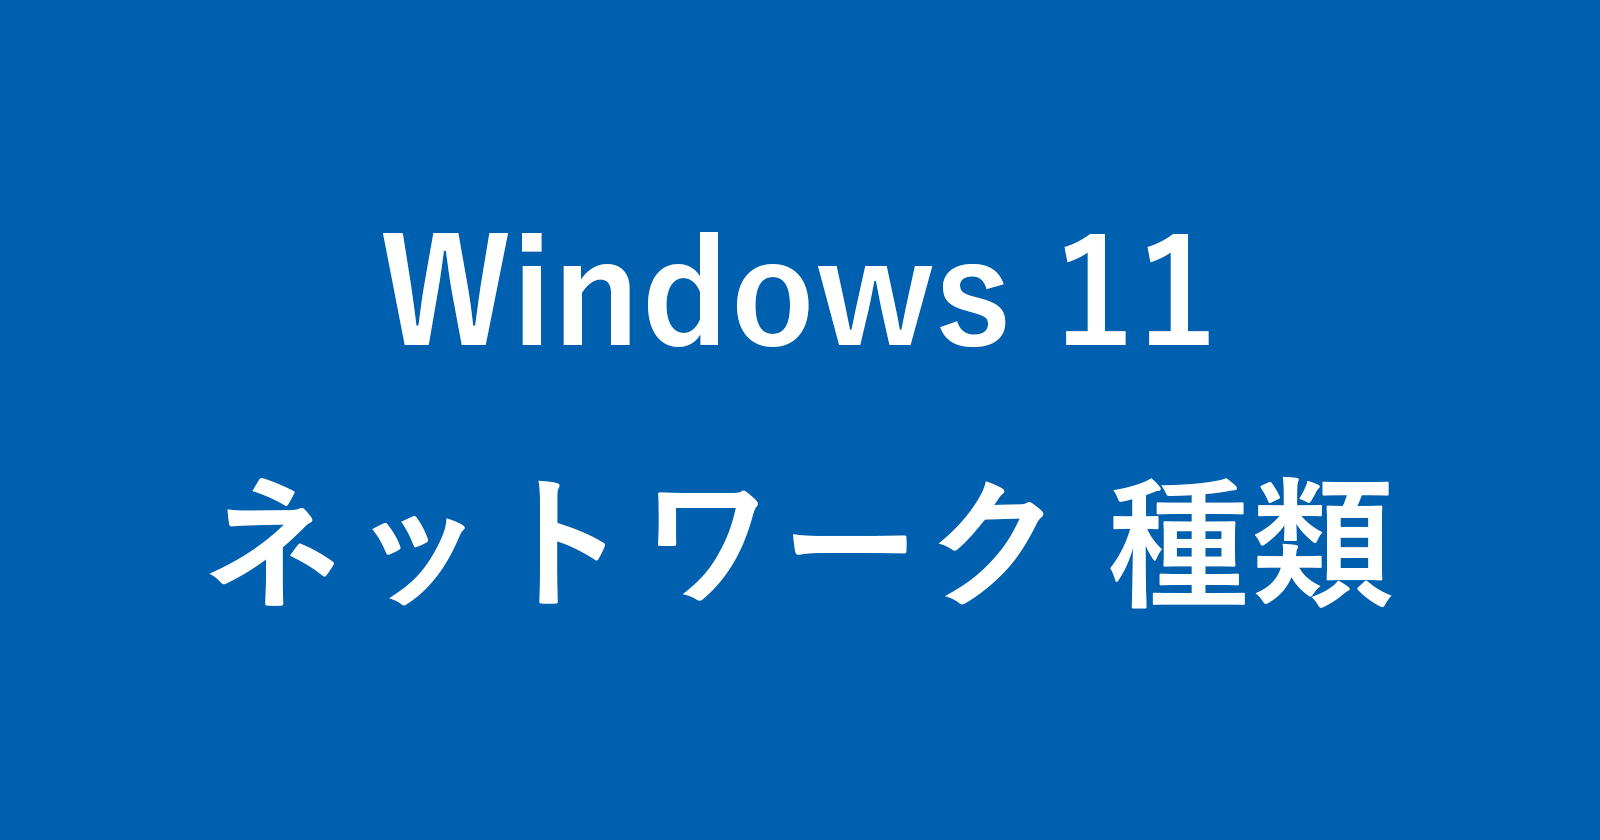 windows 11 network public private